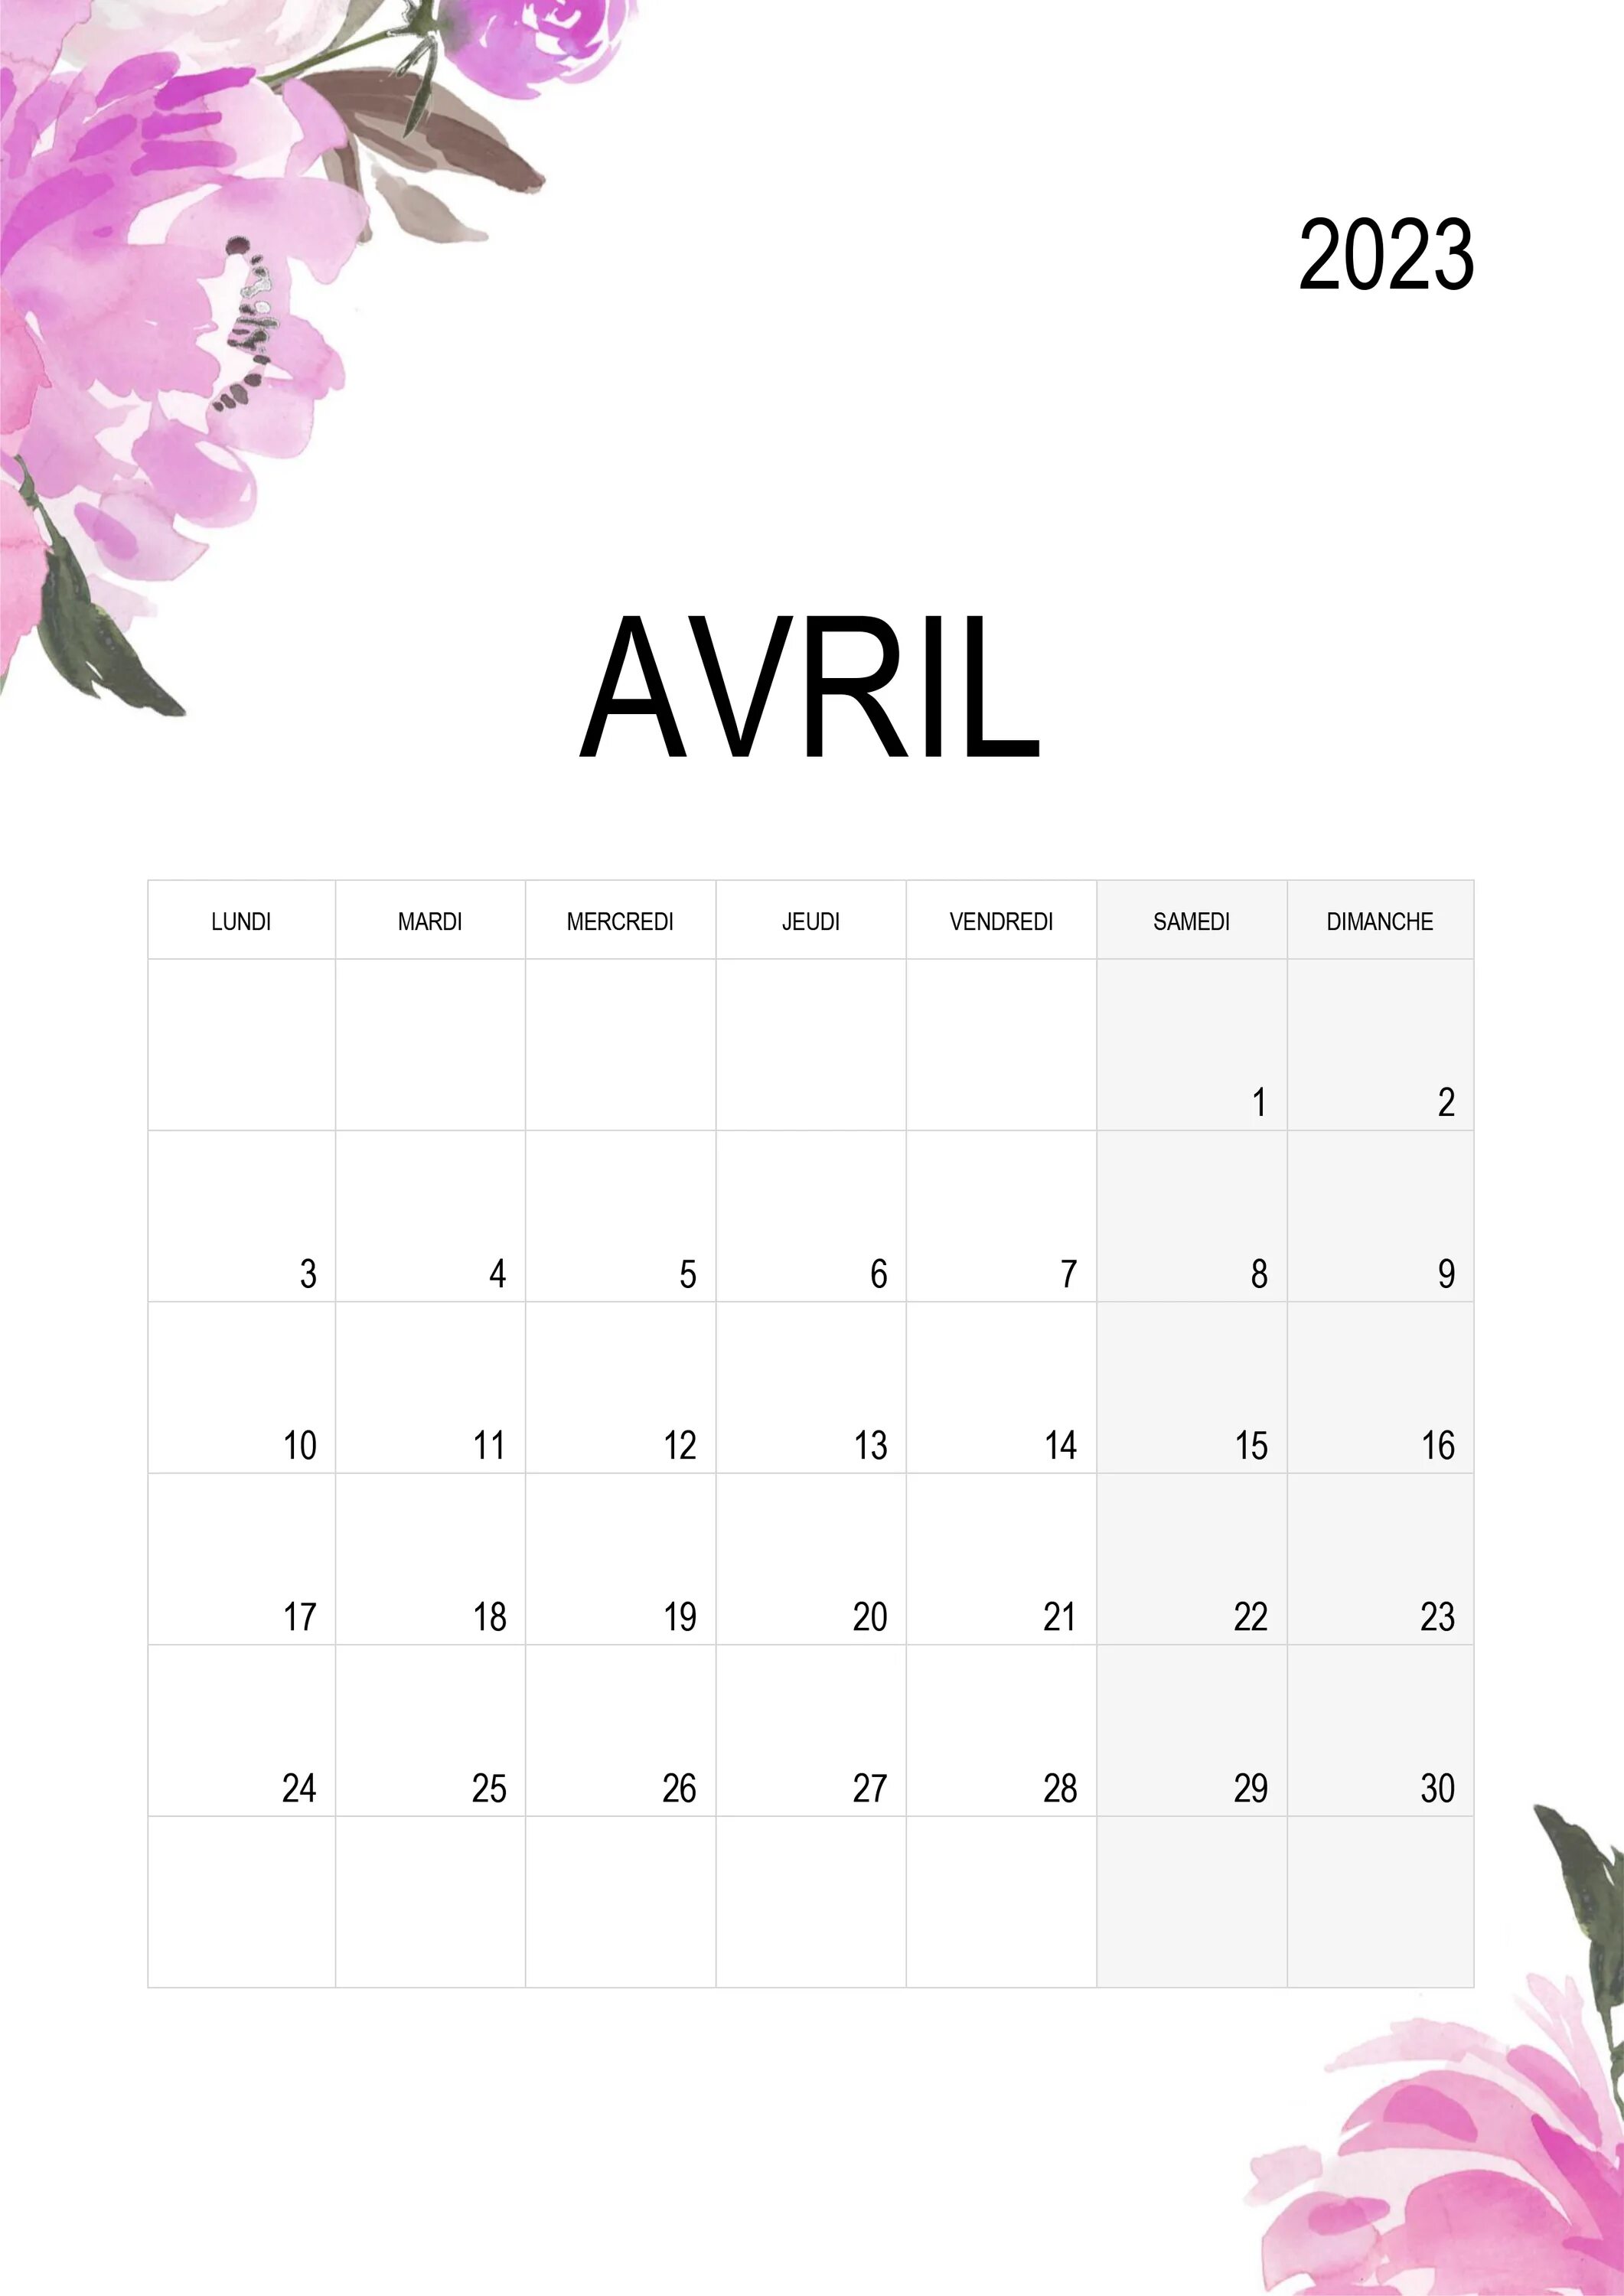 22 апреля 2024 года какой день. Календарь апрель. Календарь апрель 2023. Календарь на 2023 апрель апрель. Календарь на 2023 календарь на апрель 2023.